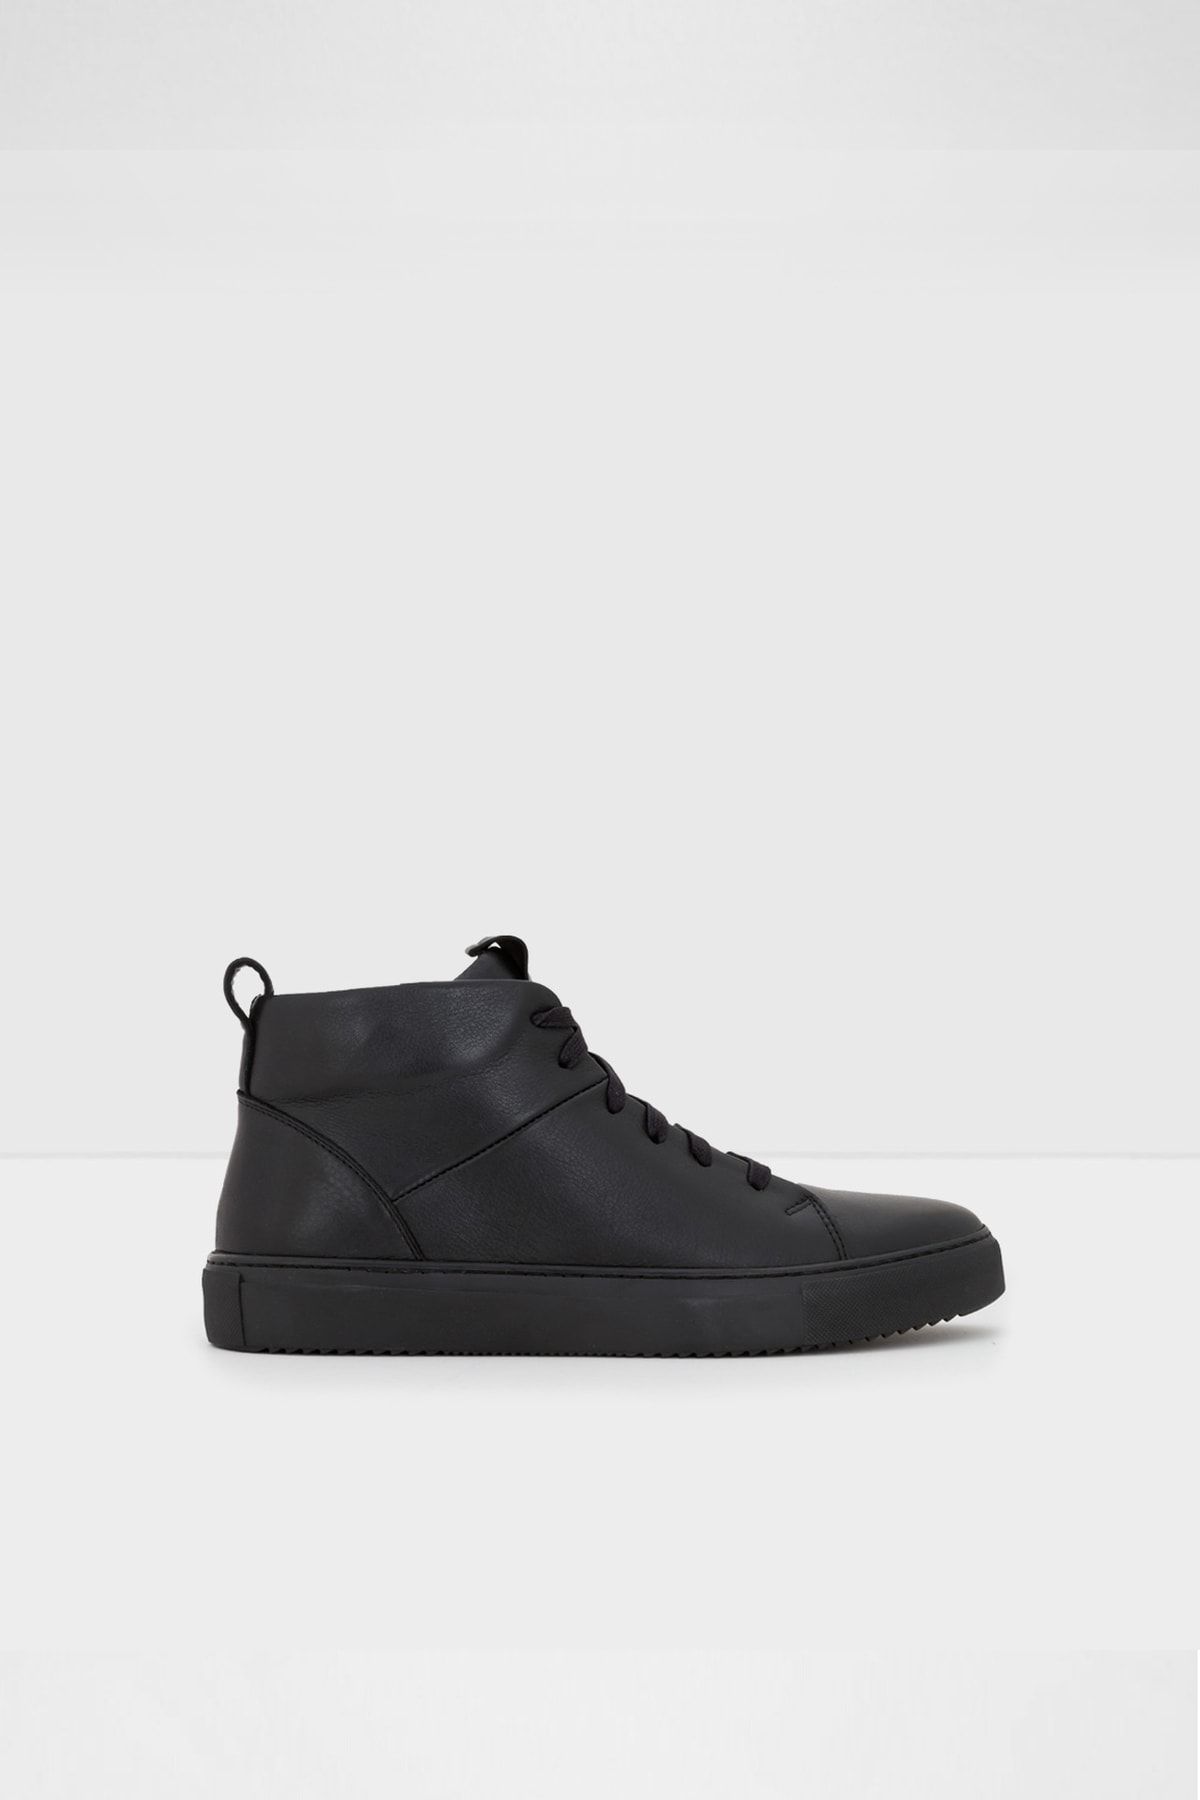 Aldo Erkek Siyah Bağcıklı Sneaker